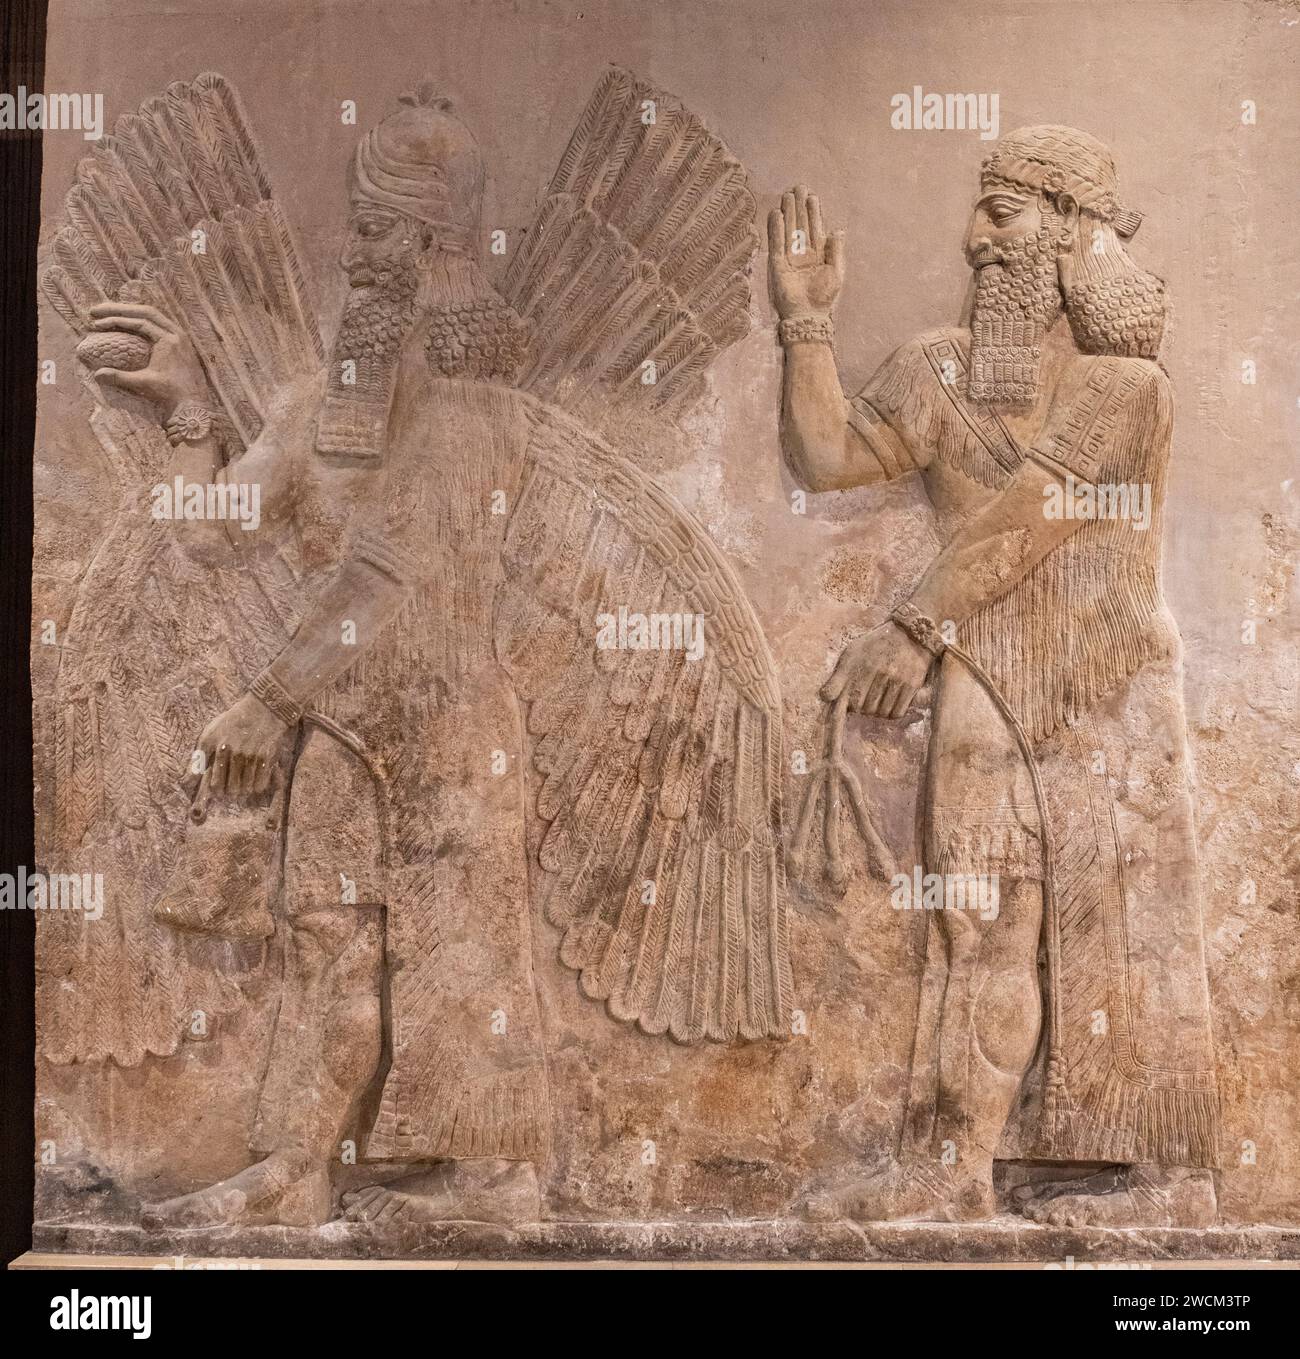 Gemeißeltes Steinrelief der geflügelten Gottheit aus dem assyrischen Palast von Dur-Sharrukin; Chorsabad, Irak, jetzt im Irak Museum, Bagdad, Irak Stockfoto